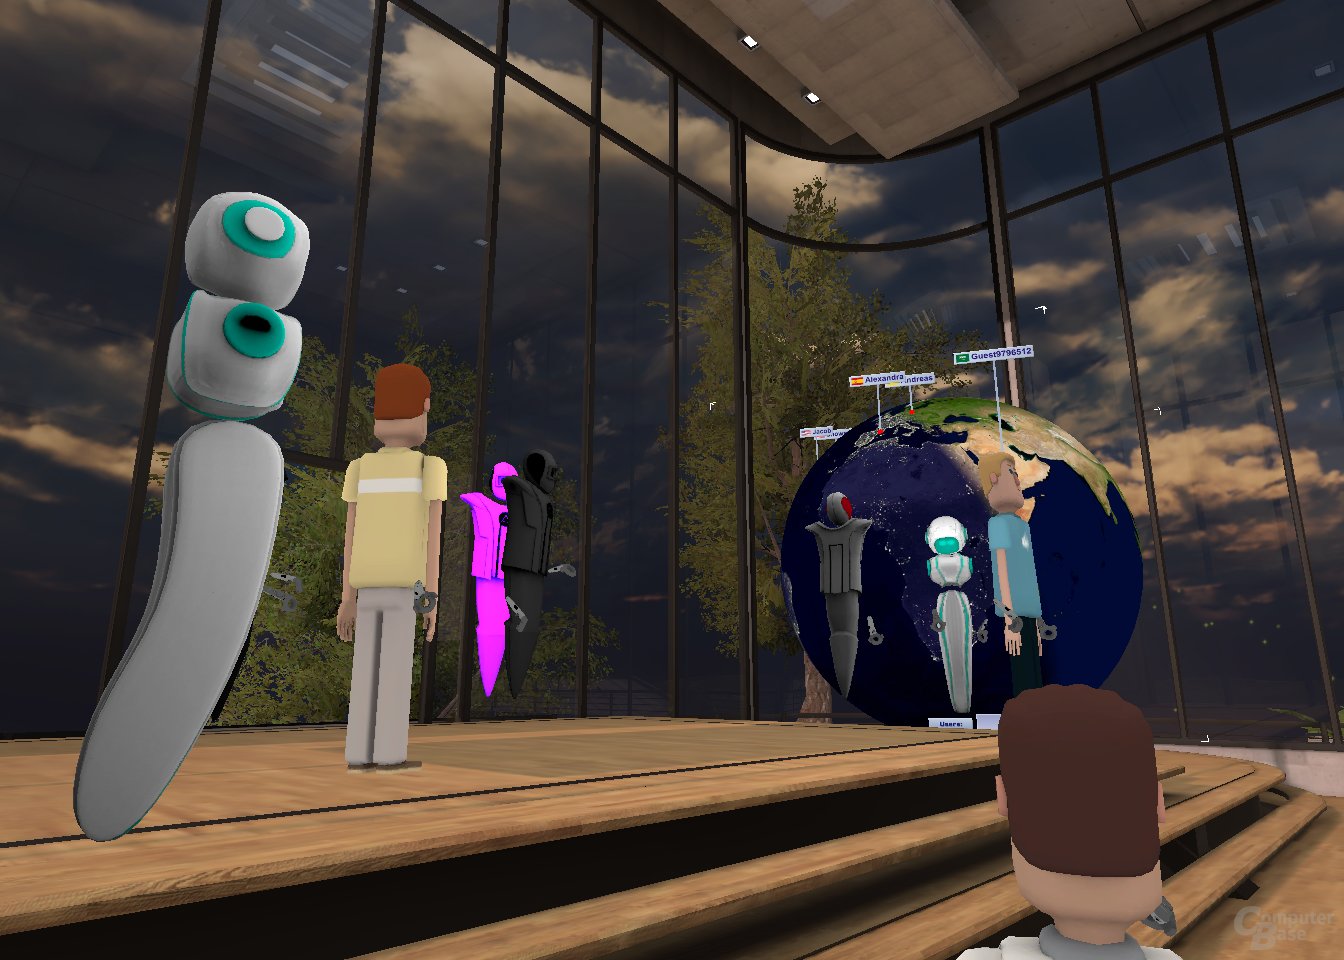 Im „Hang Out“-Raum kann ein virtueller Globus eingeblendet werden, der das Herkunftsland der einzelnen VR-Nutzer anzeigt